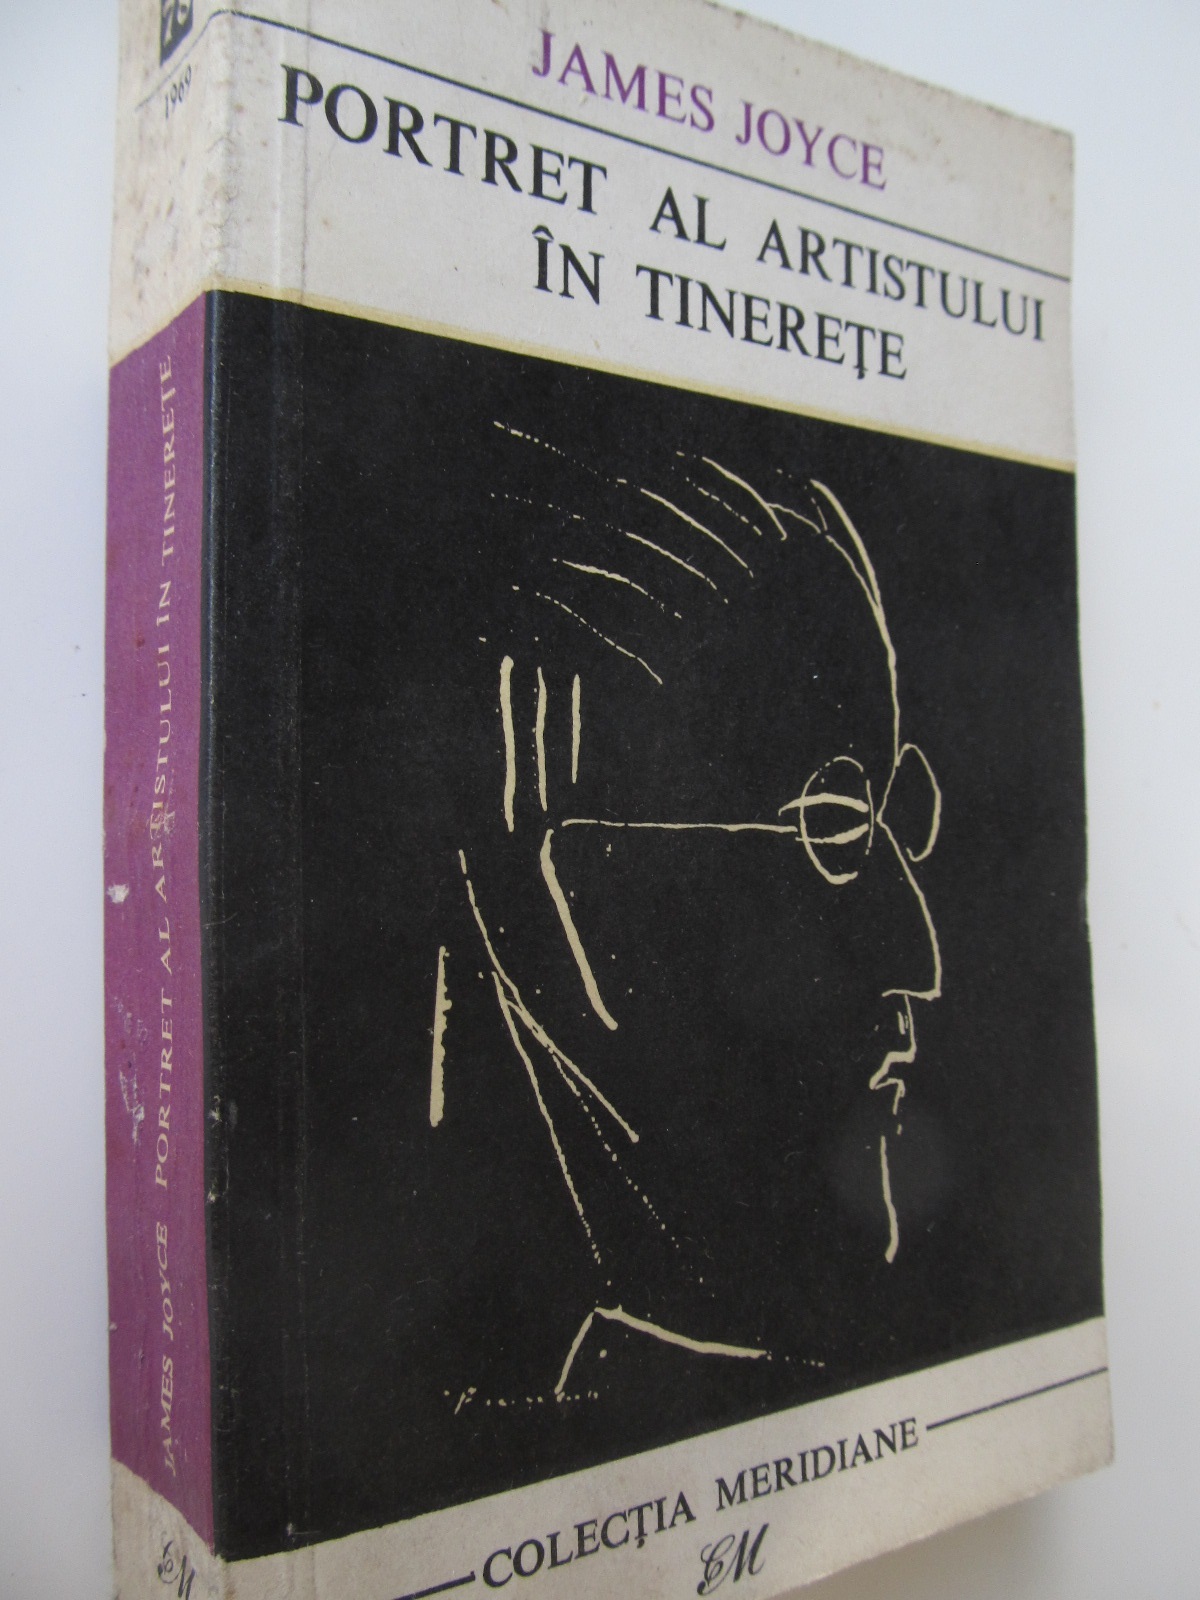 Carte Portret al artistului in tinerete - James Joyce